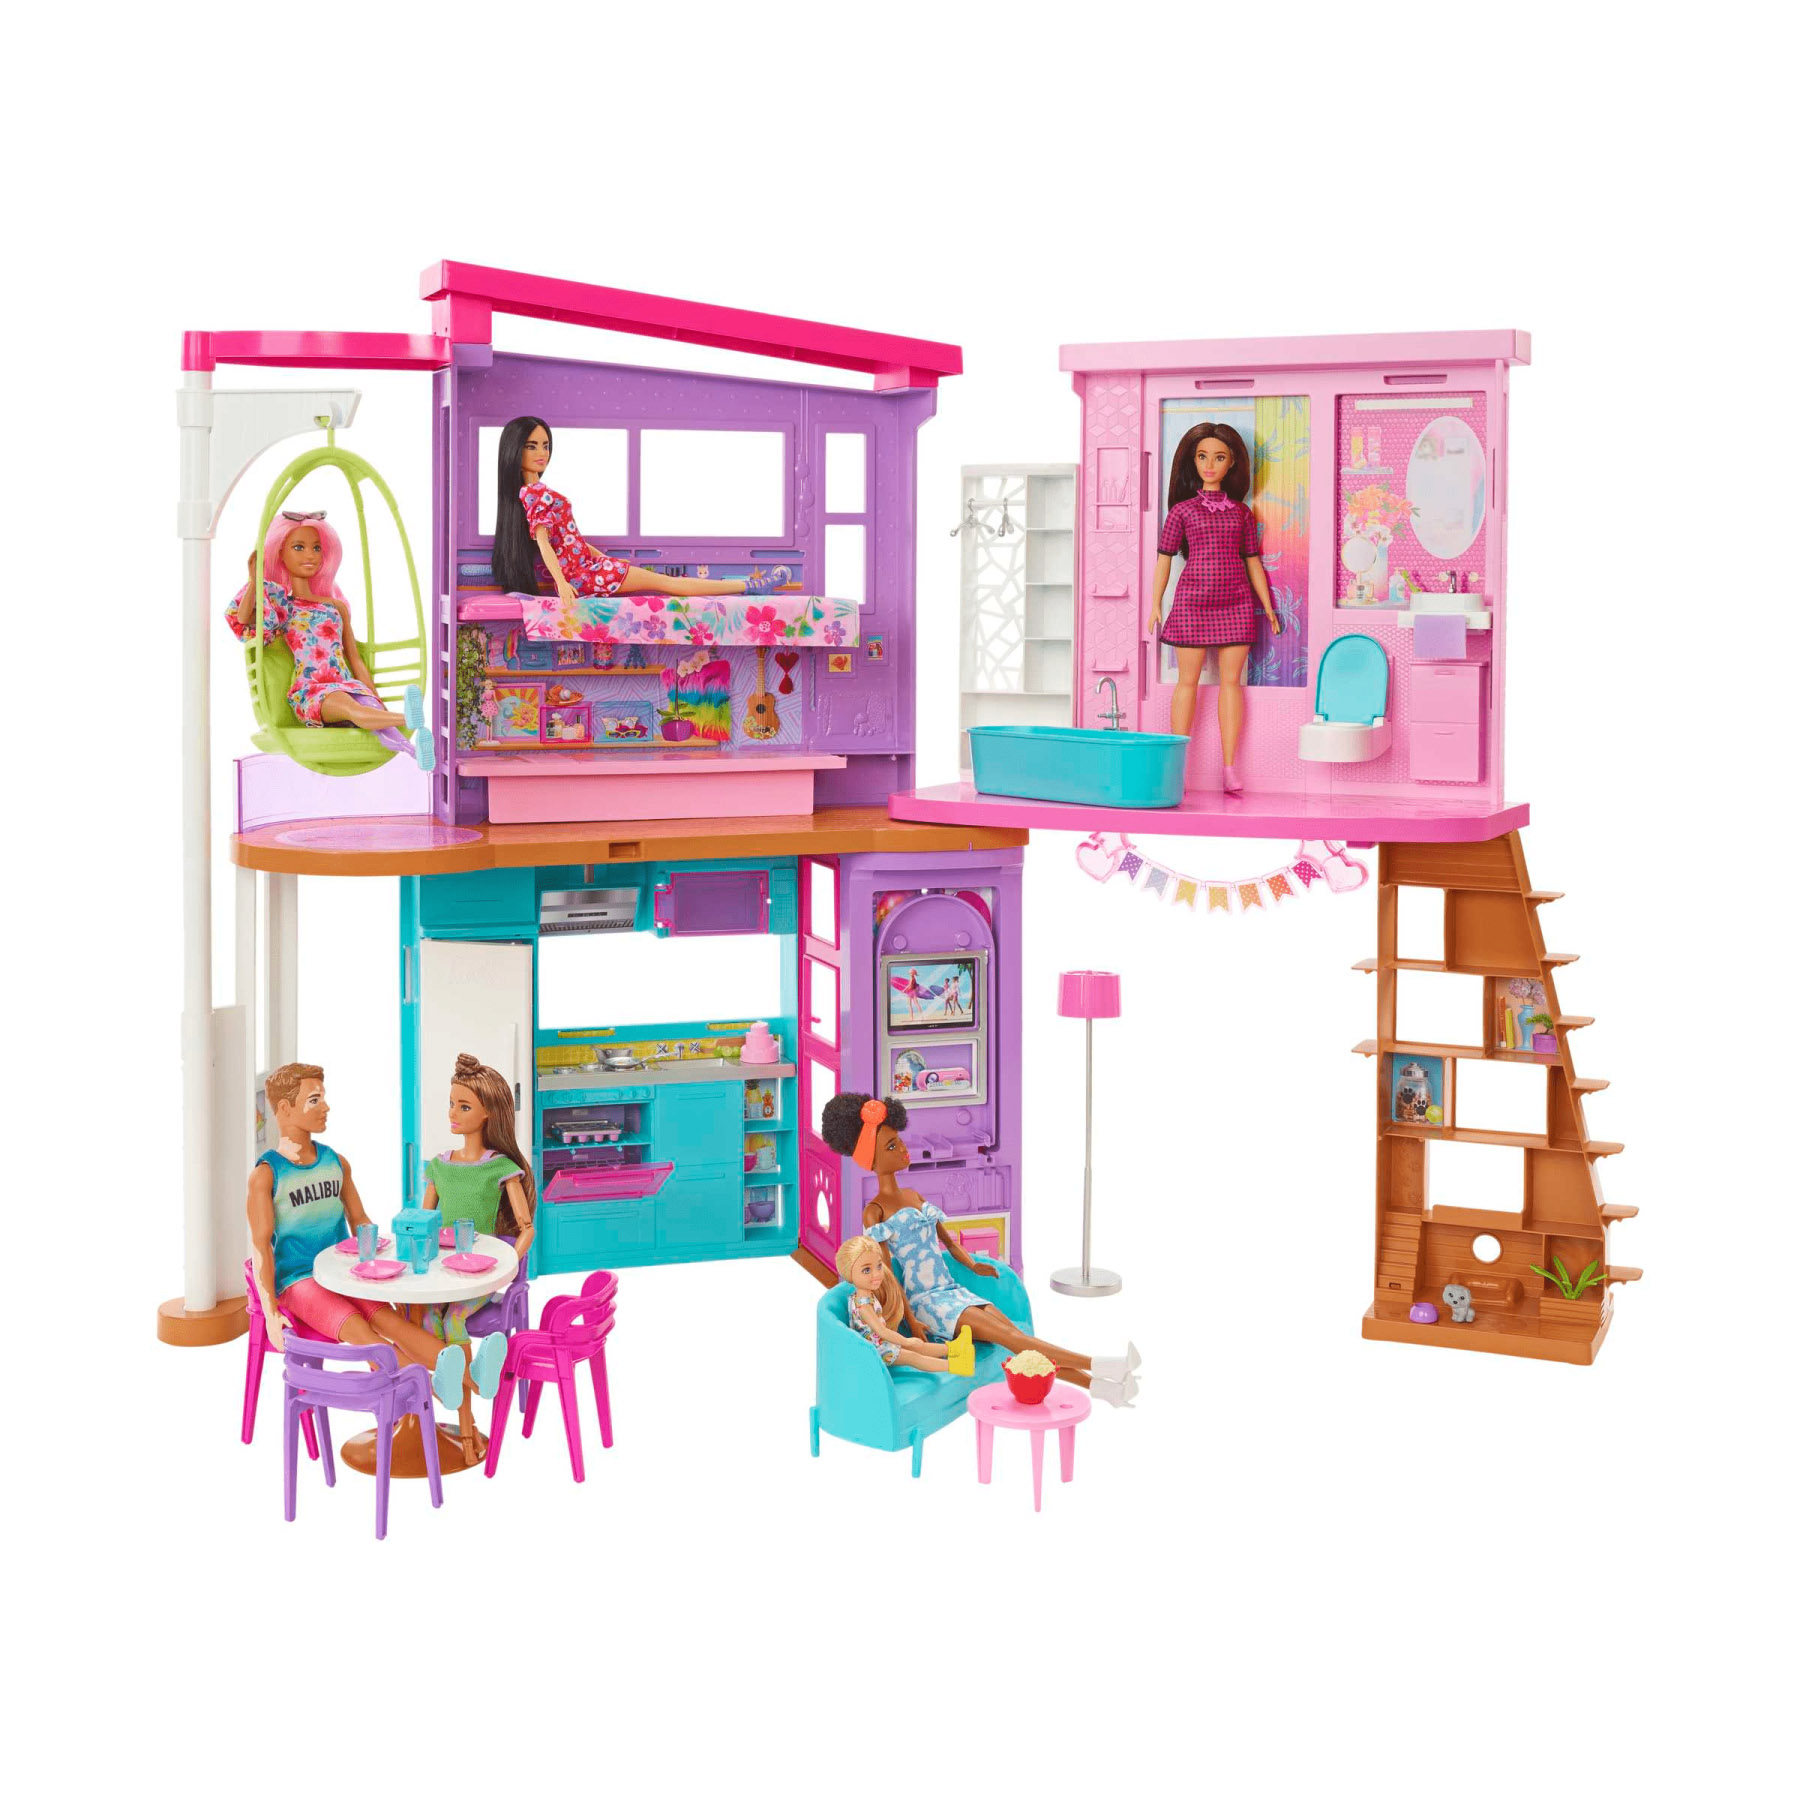 Barbie Casa Di Malibu, Playset Casa delle Bambole con 2 piani, 6